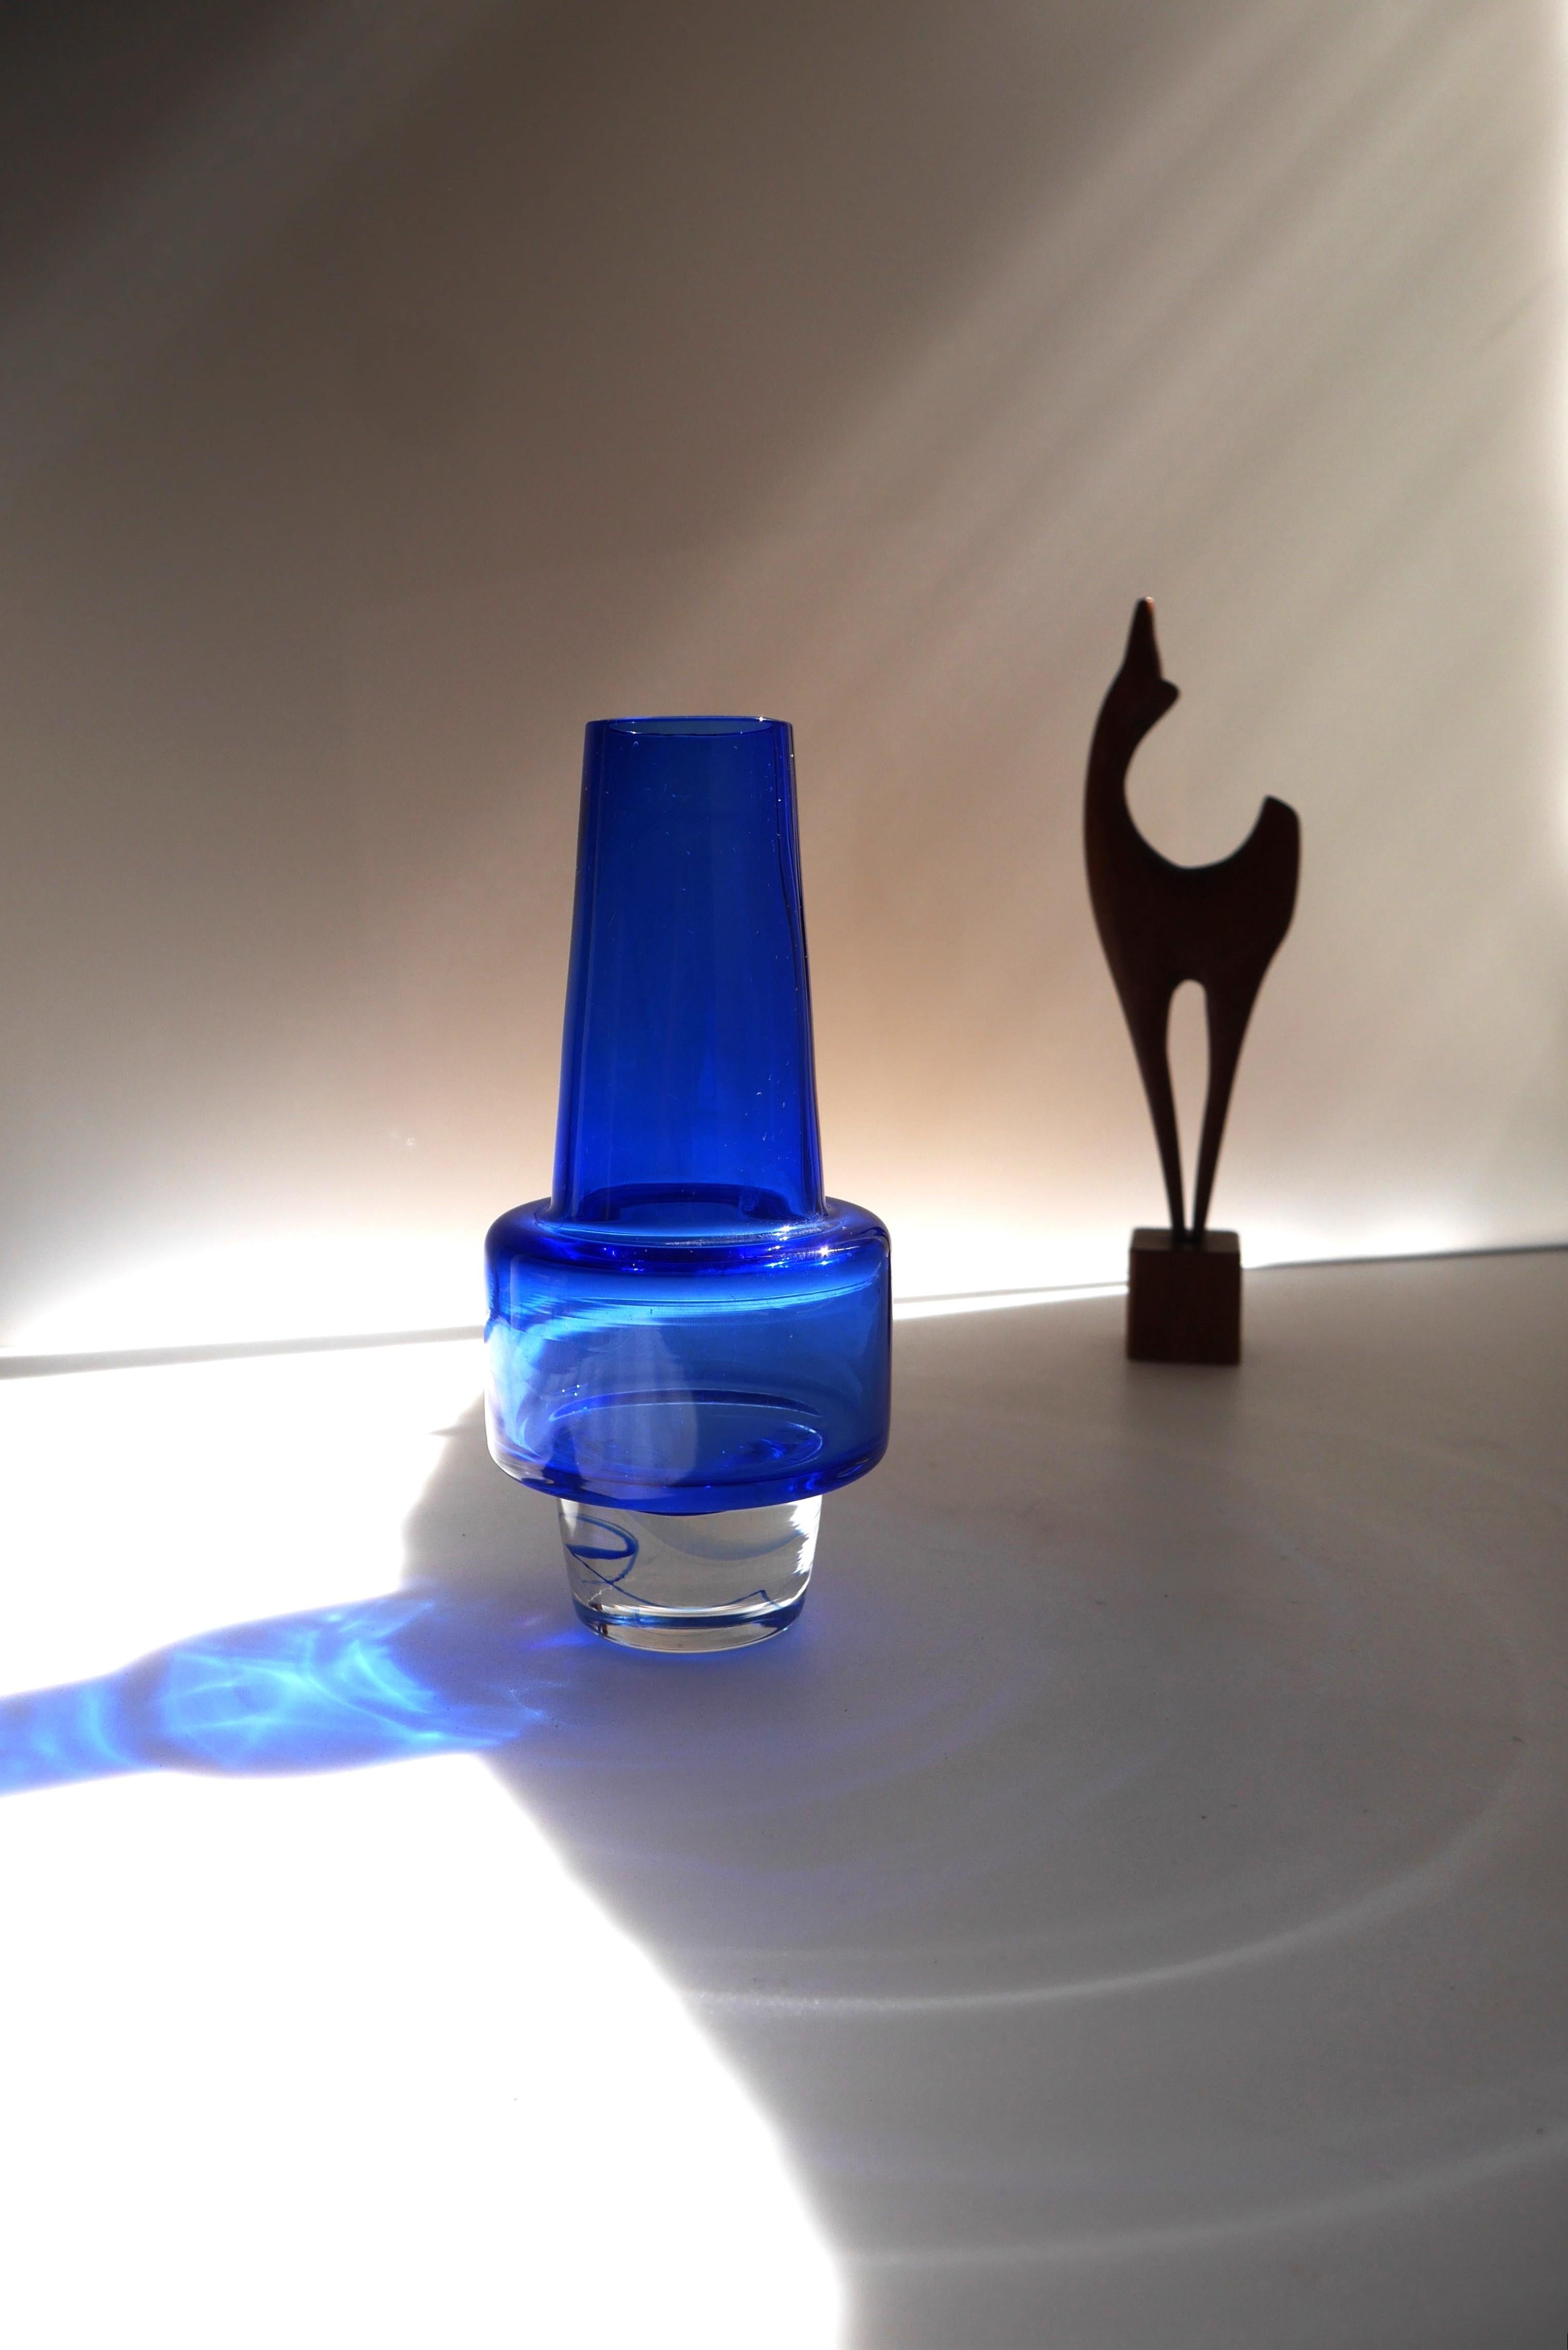 Eine fantastische tiefblaue oder indigoblaue Glasvase, bekannt als die 